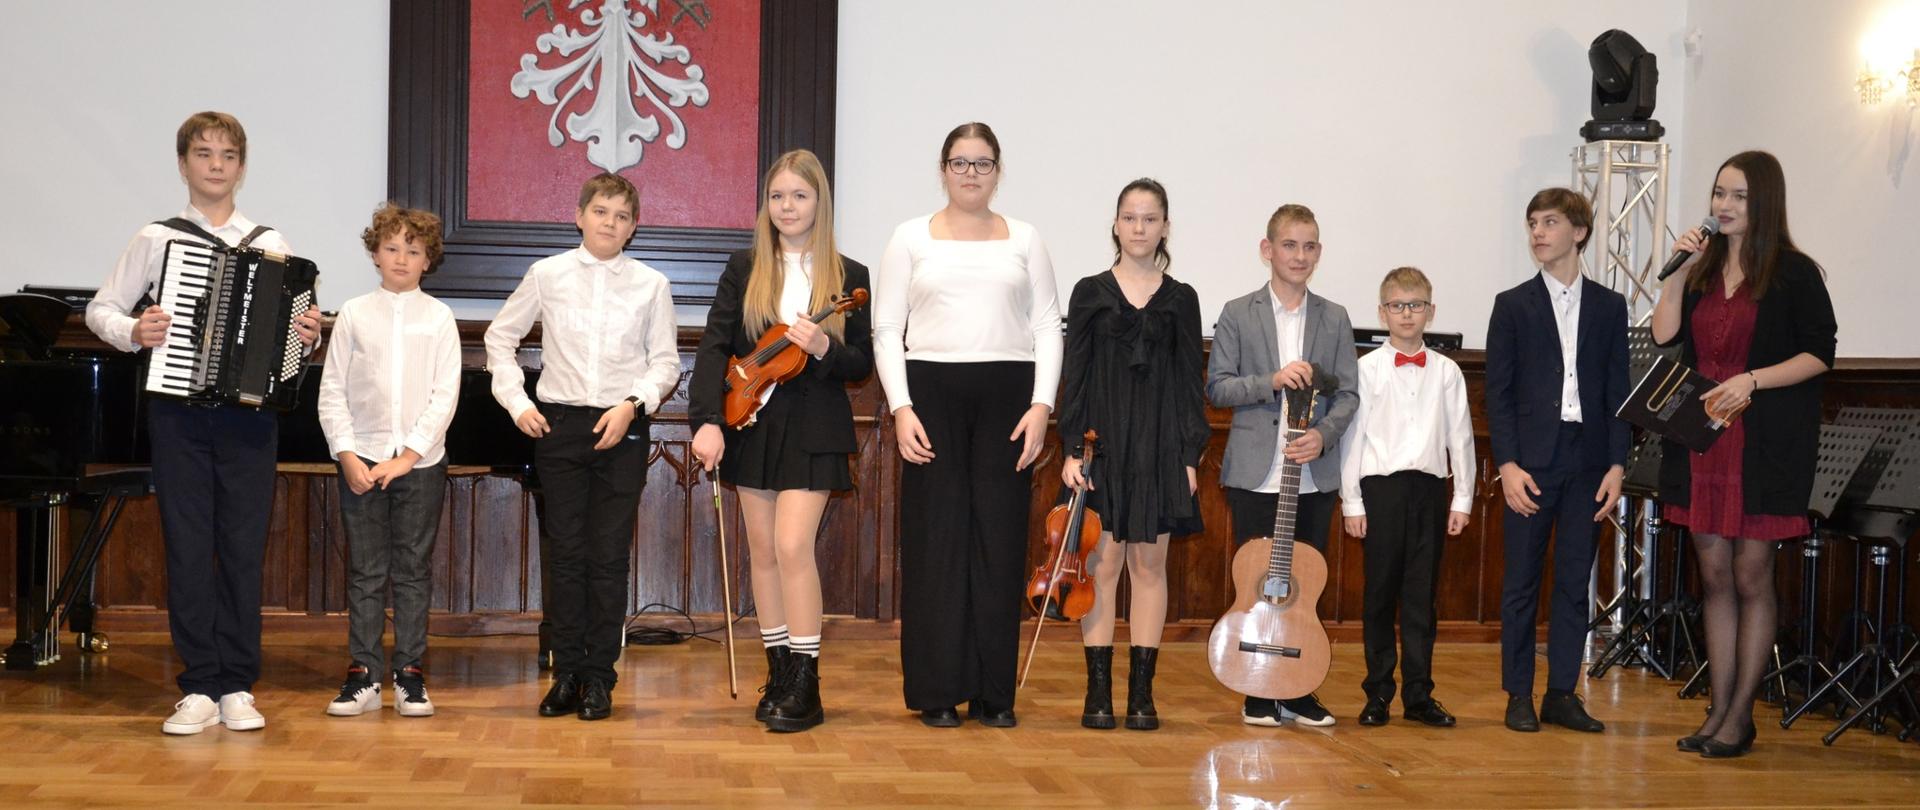 Uczniowie klasy III cyklu 4-letniego PSM I stopnia podczas koncertu klasowego wraz z nauczycielką Kalina Rokosz w sali królewskiej PSM w Mielcu